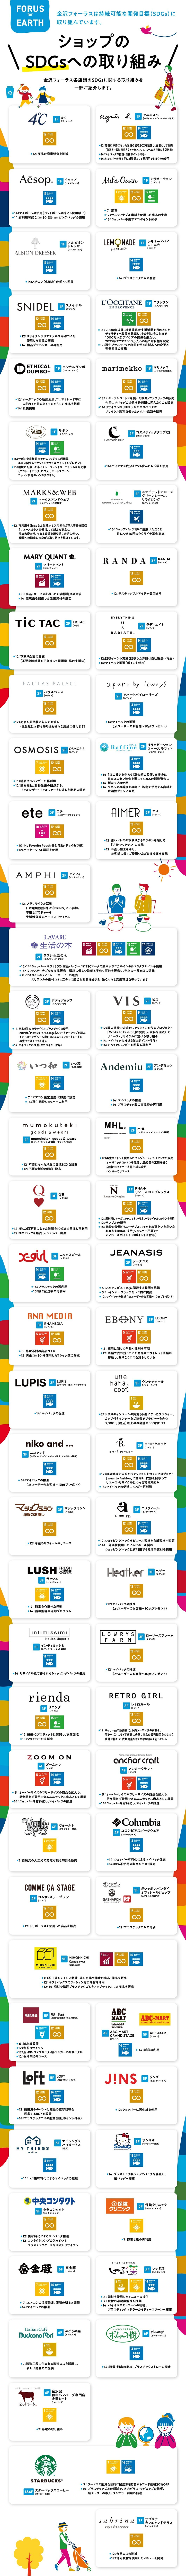 金沢フォーラス内、各ショップのSDGへの取り組み例をご紹介します！